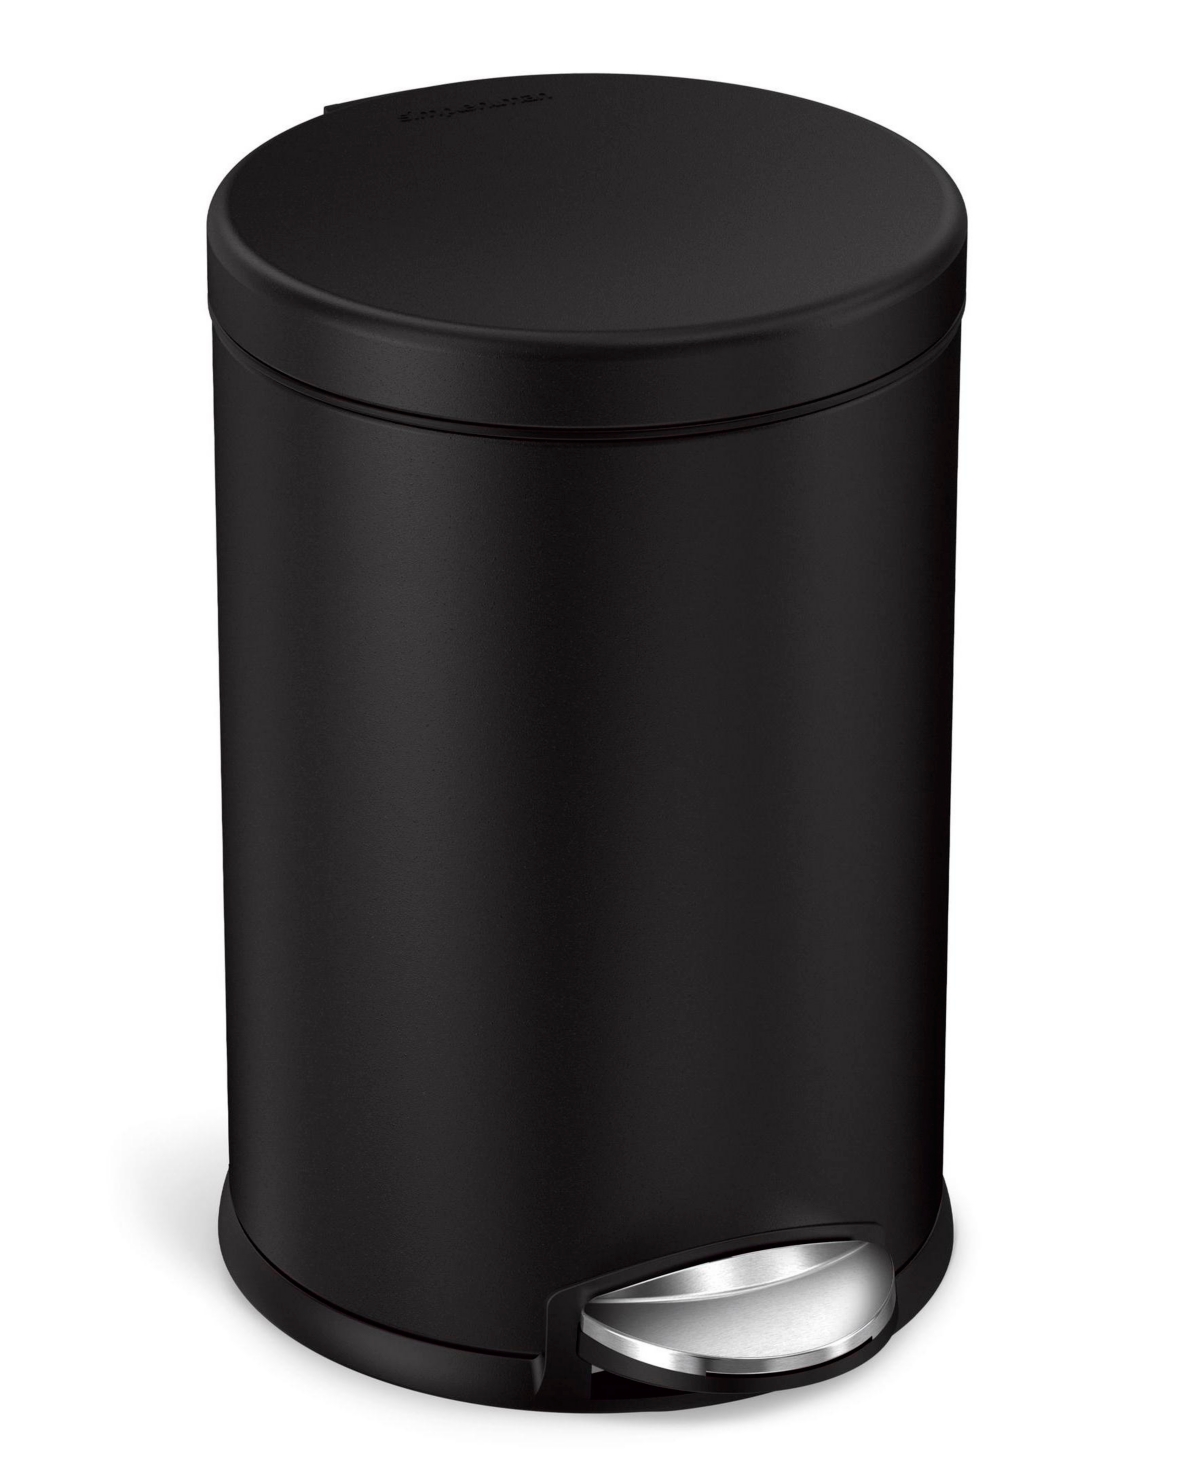 Simplehuman Round Trash Can, 4.5 Liter In Matte Black